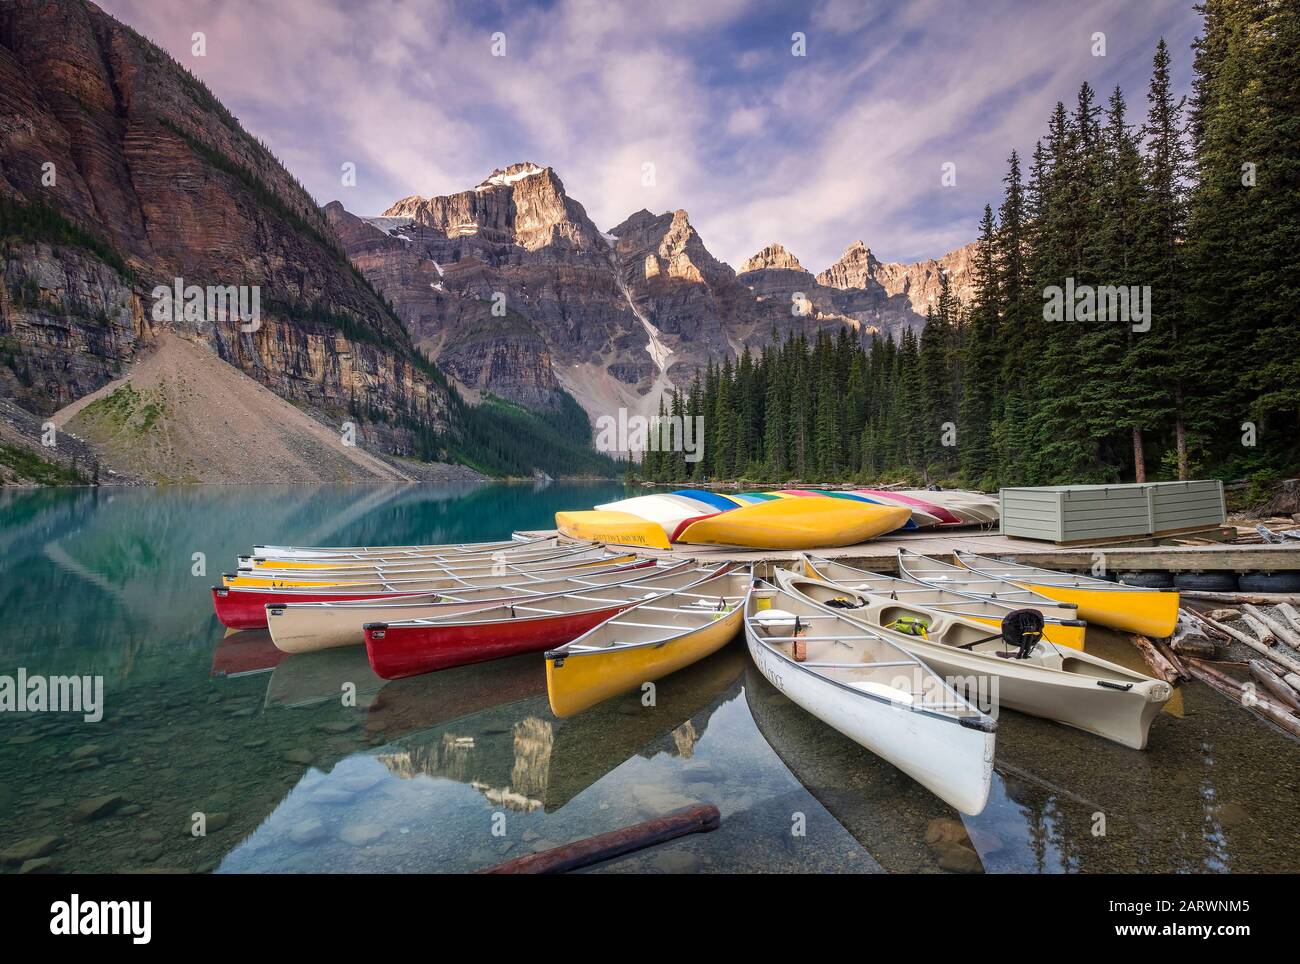 Canoës Multicolores Sur Le Lac Moraine, La Vallée Des Dix Pics, Le Parc National Banff, Les Rocheuses Canadiennes, Alberta, Canada Banque D'Images